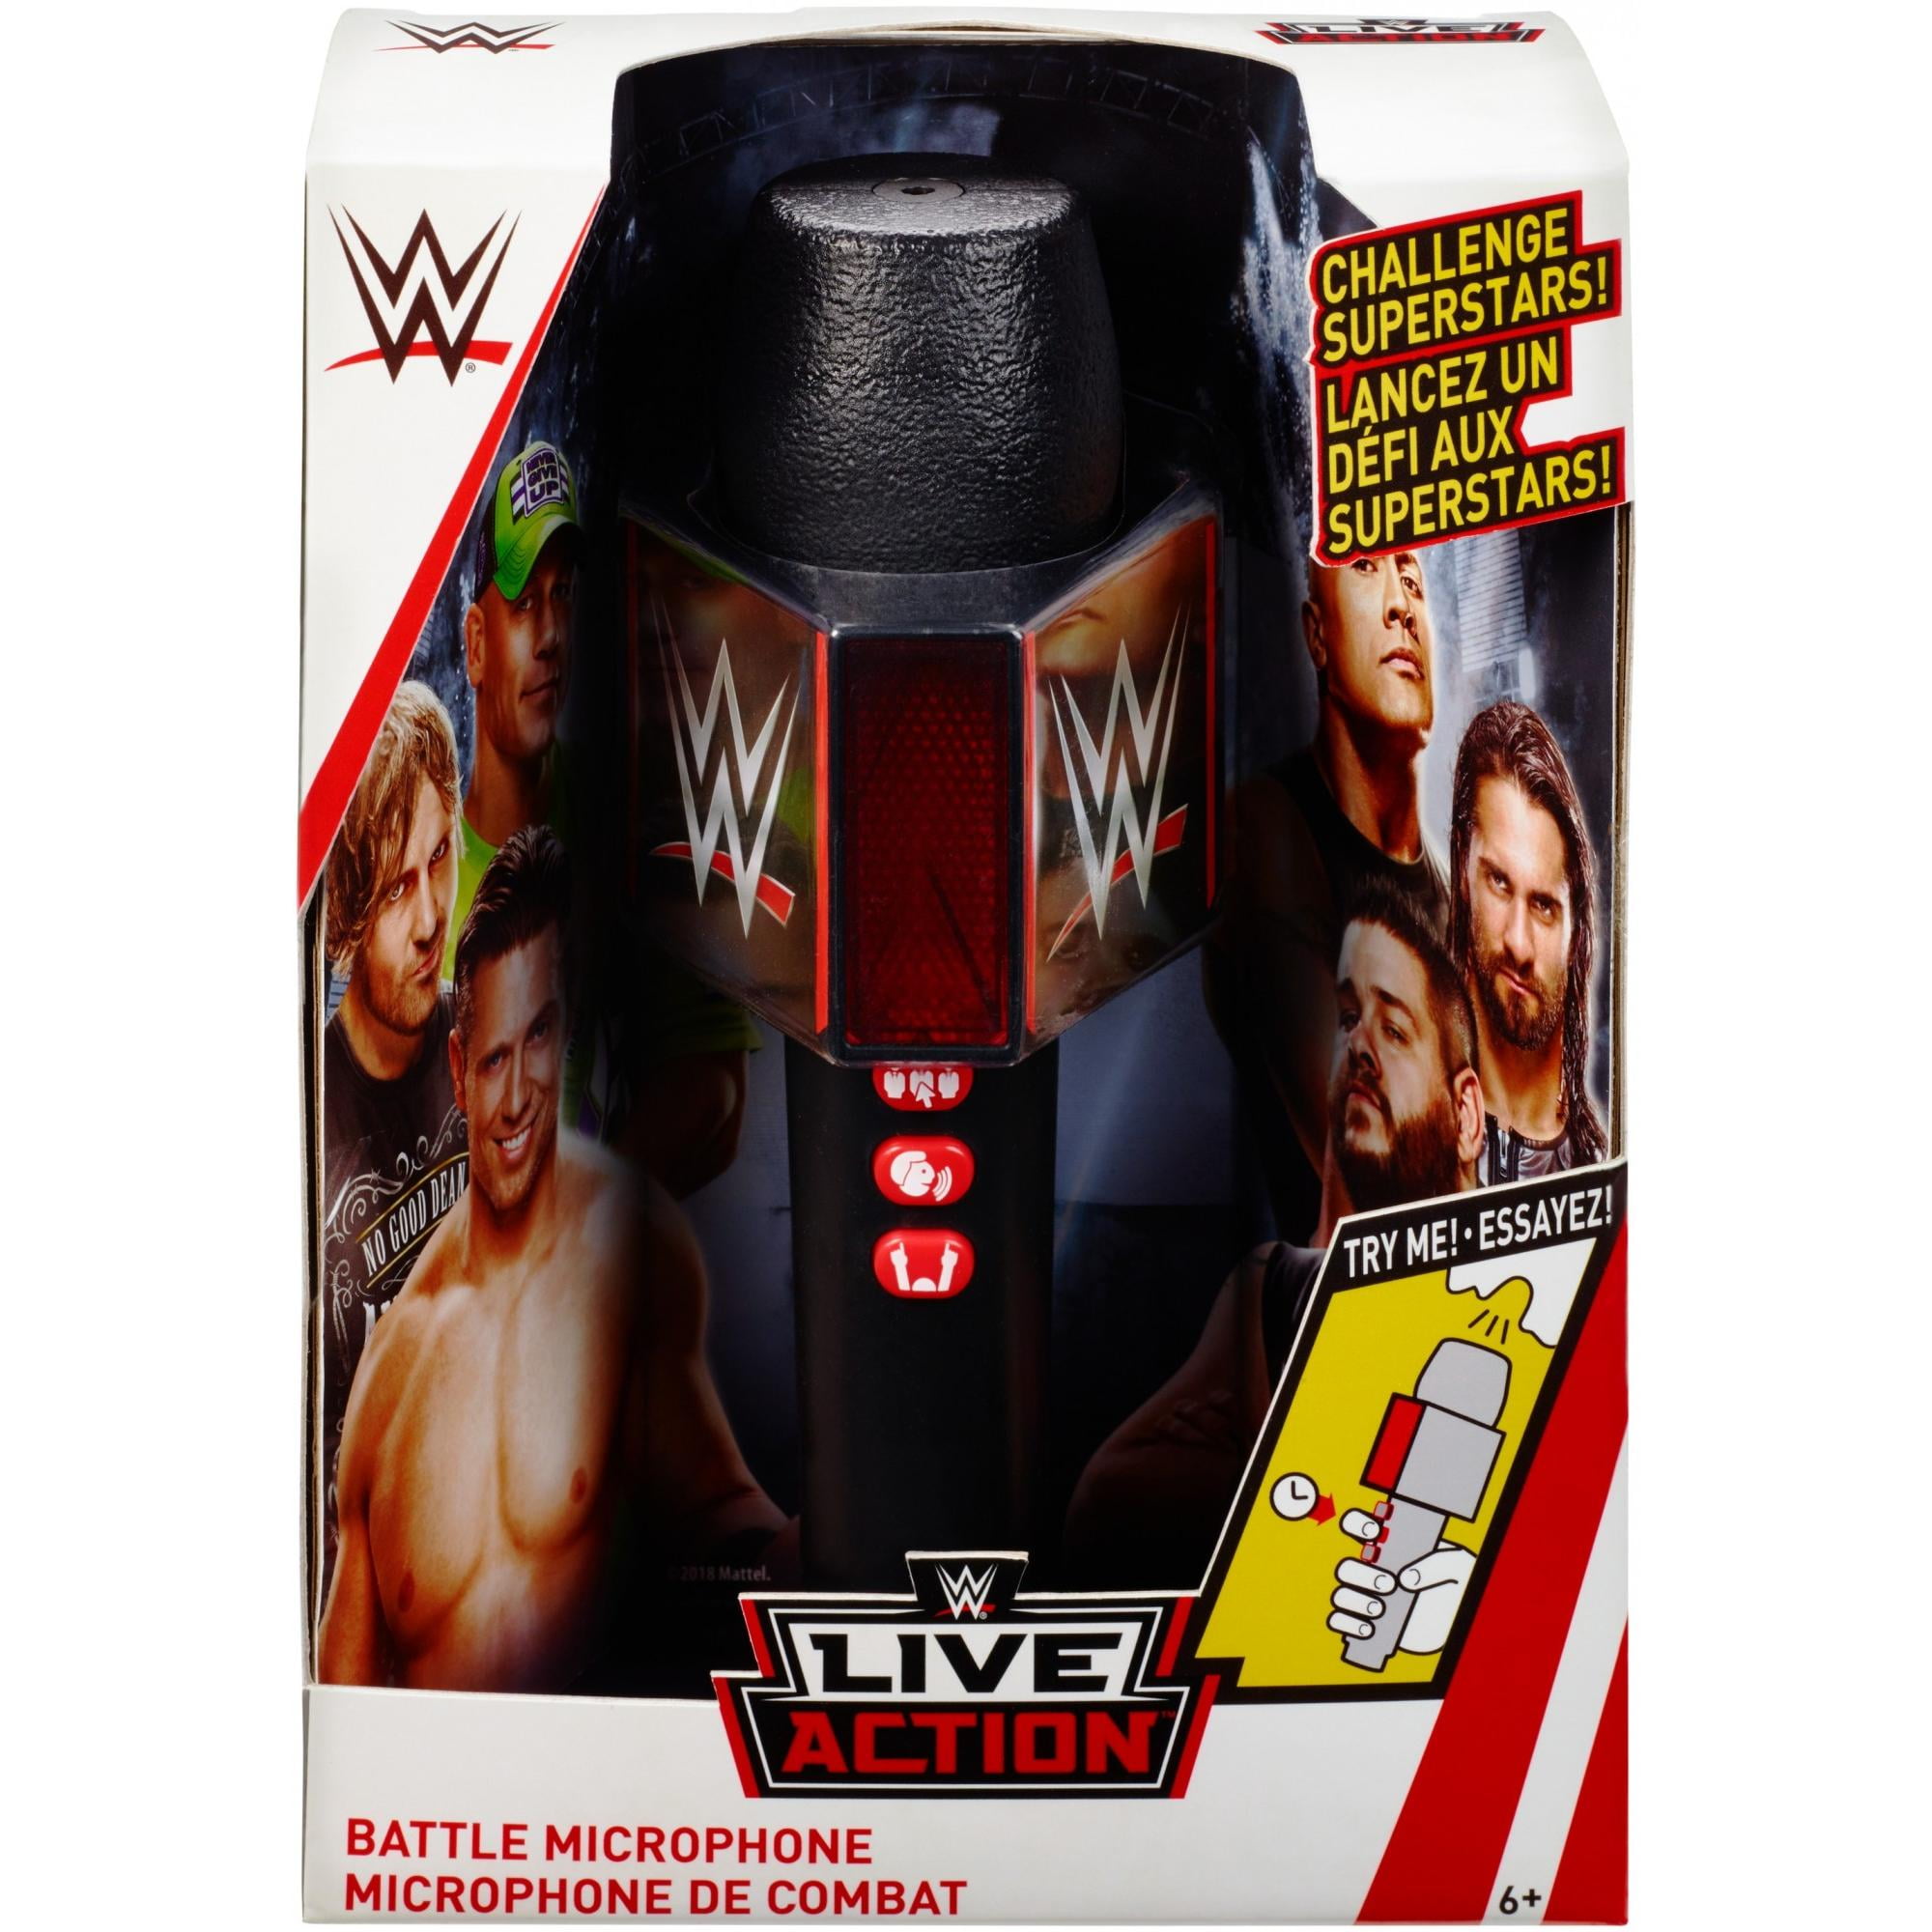 2018 WWE WWF Mattel Live Action Wrestling Battle Microphone Mic FXR16 for sale online 